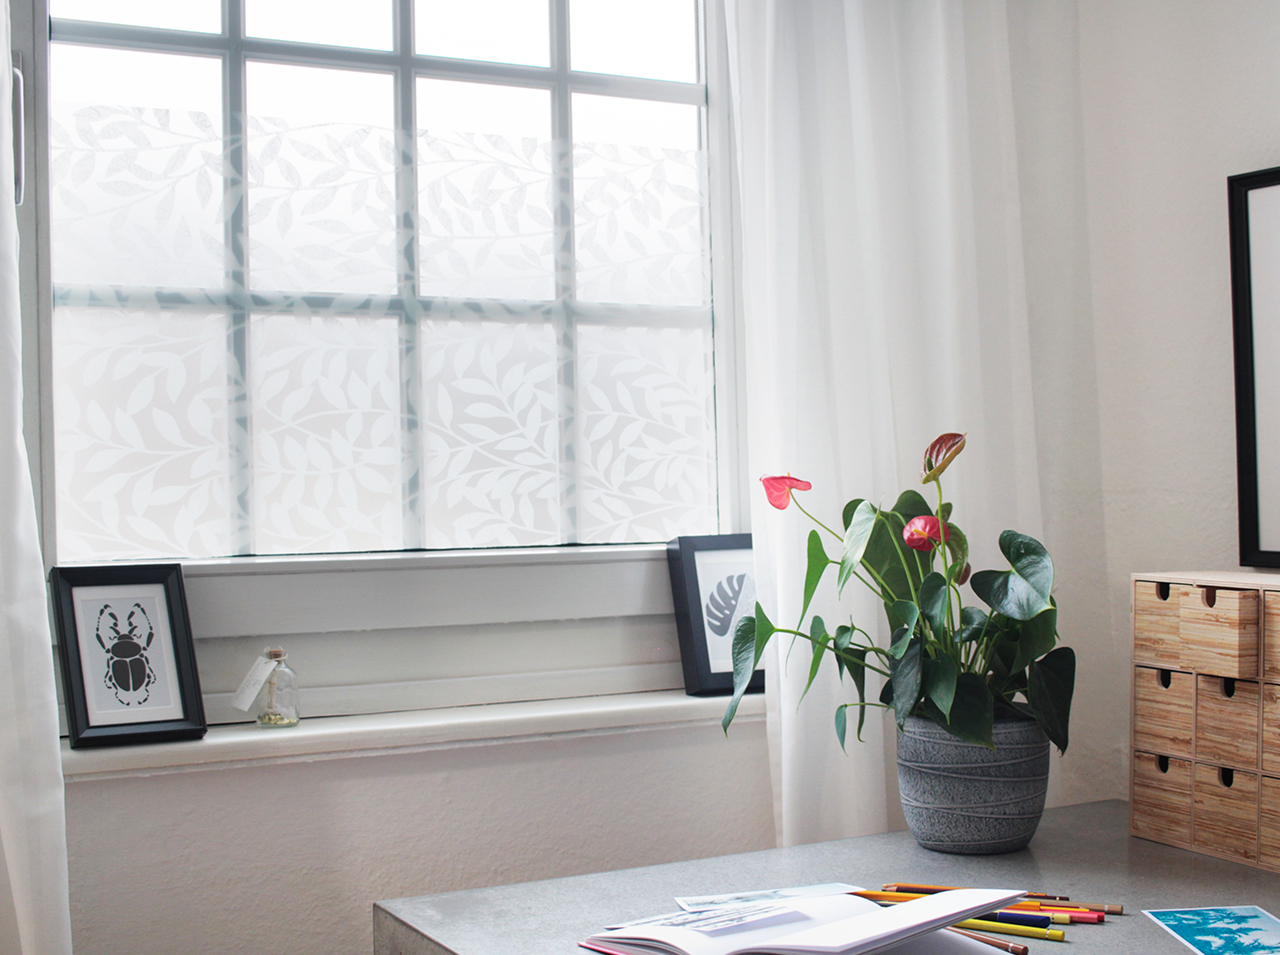 Fensterfläche für effektiven Sichtschutz mit d-c-fix® Fensterfolie static premium Jane in modernem Design von Blätterranken beklebt.